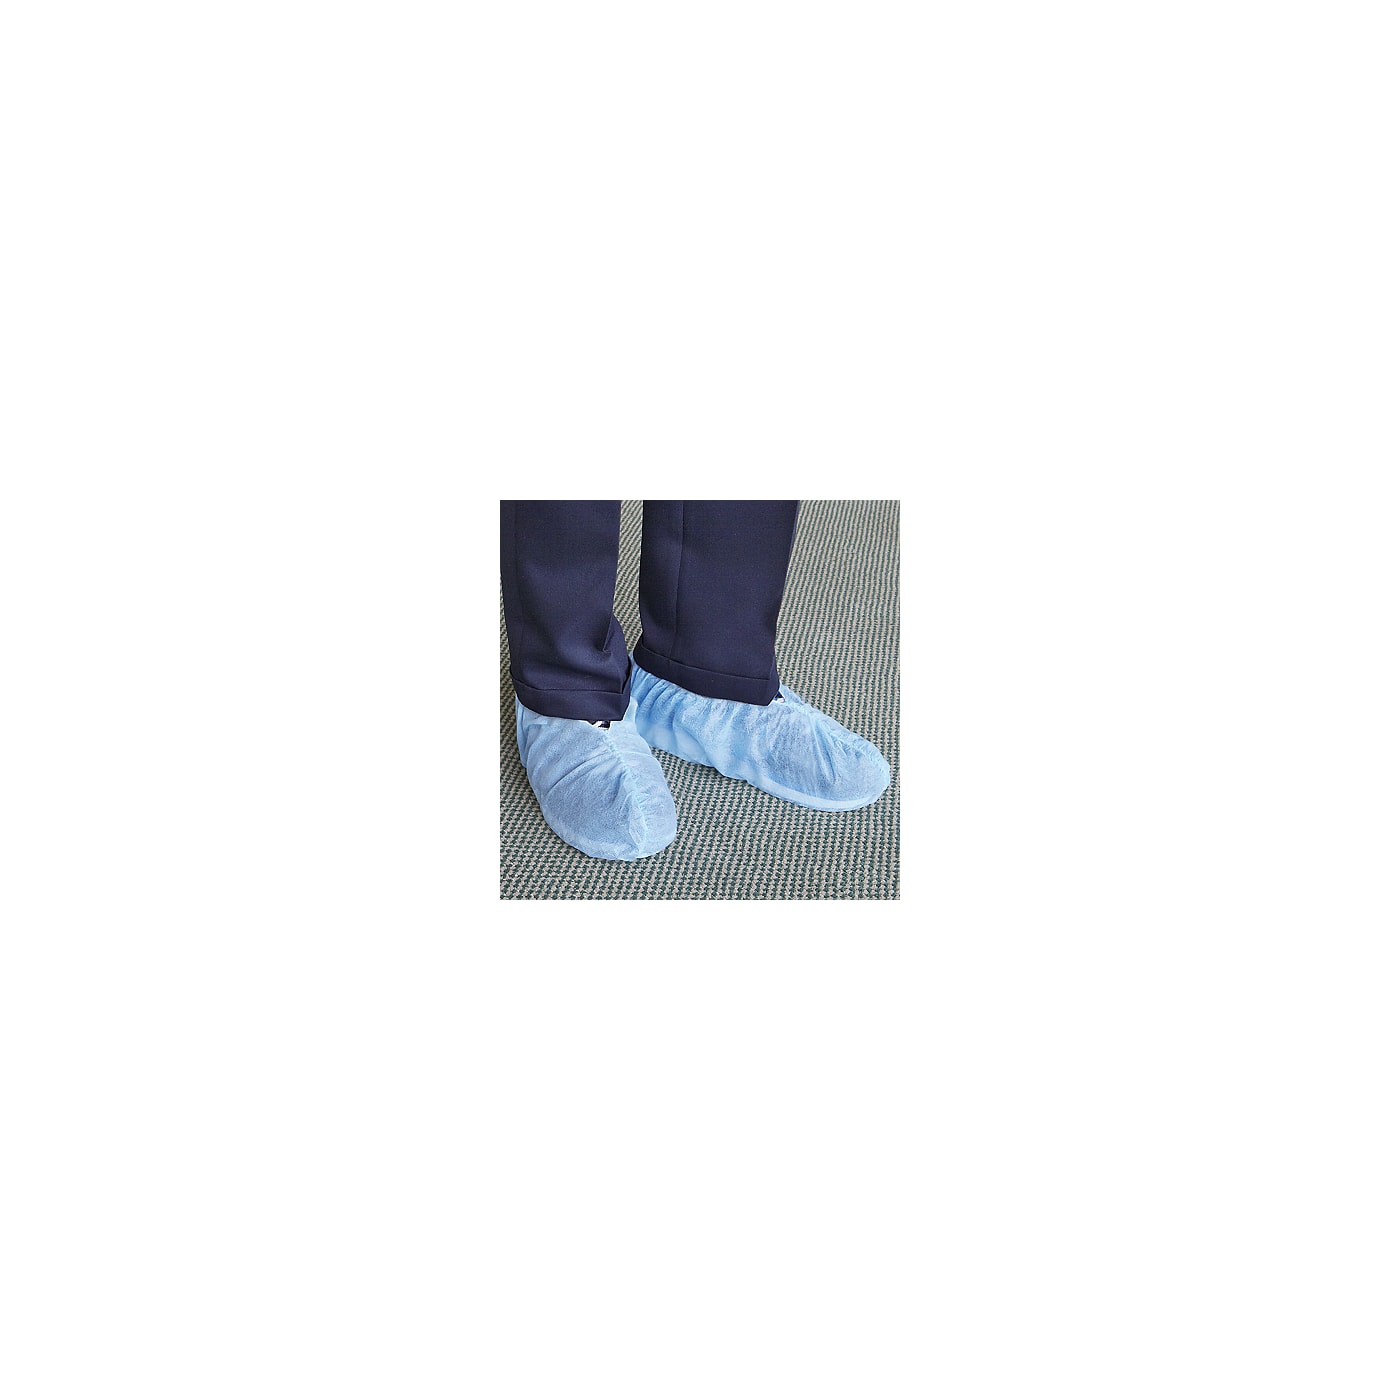 Shoe Covers - Size 6-11, Blue 150 ctn